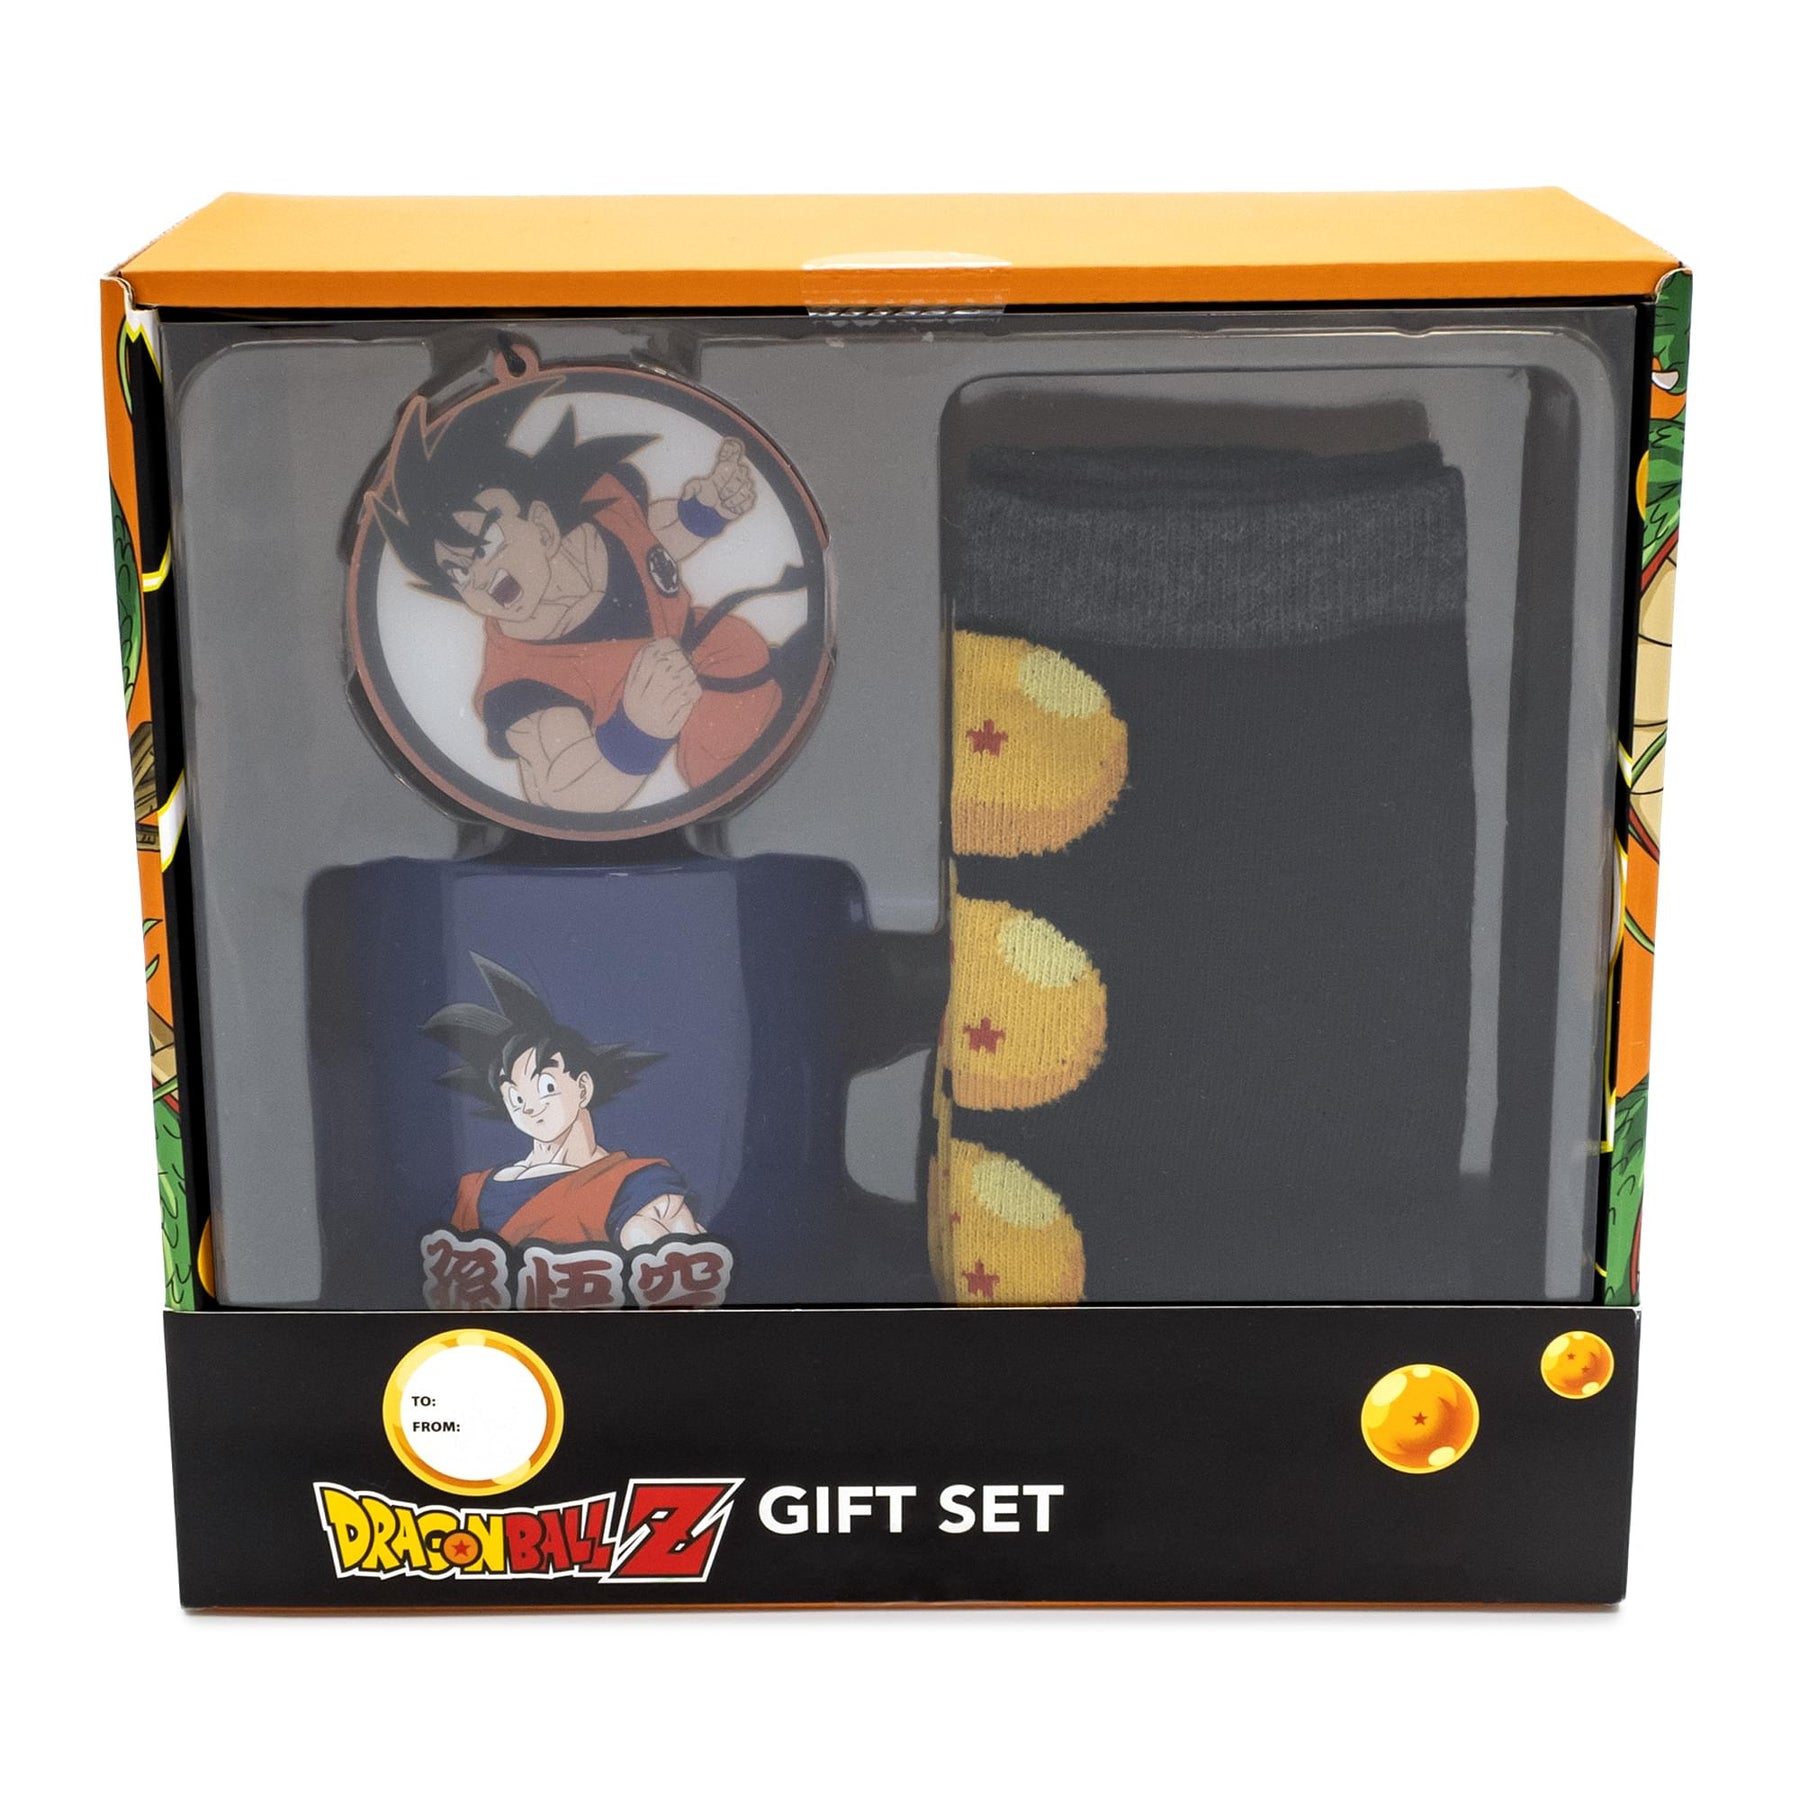 Dragon Ball Z Goku Mug, Socks, and Ornament Bundle